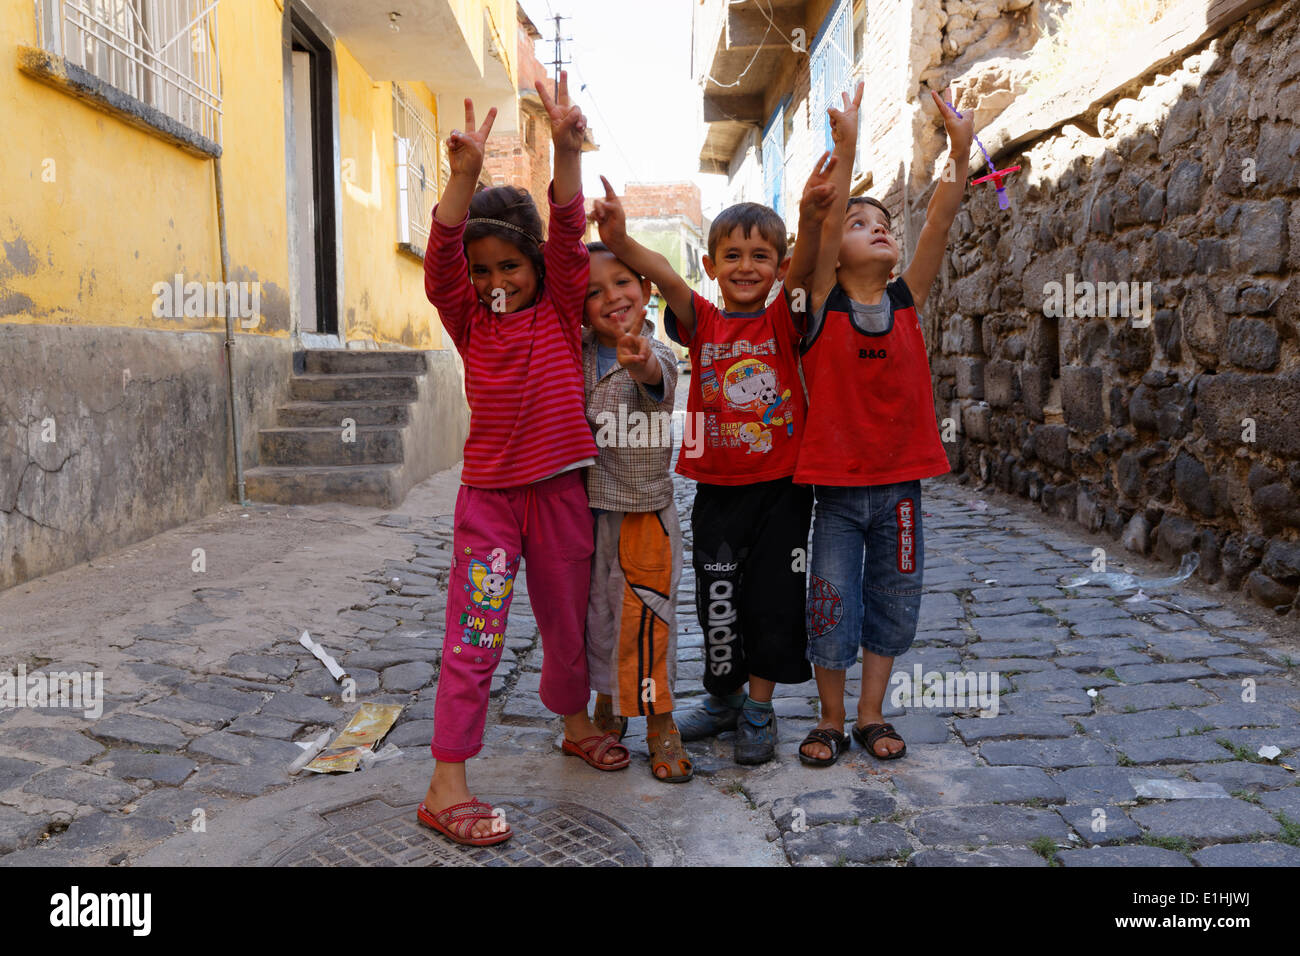 Les enfants dans le centre historique, à Diyarbakir, dans le sud-est de l'Anatolie, Anatolie, Turquie Banque D'Images